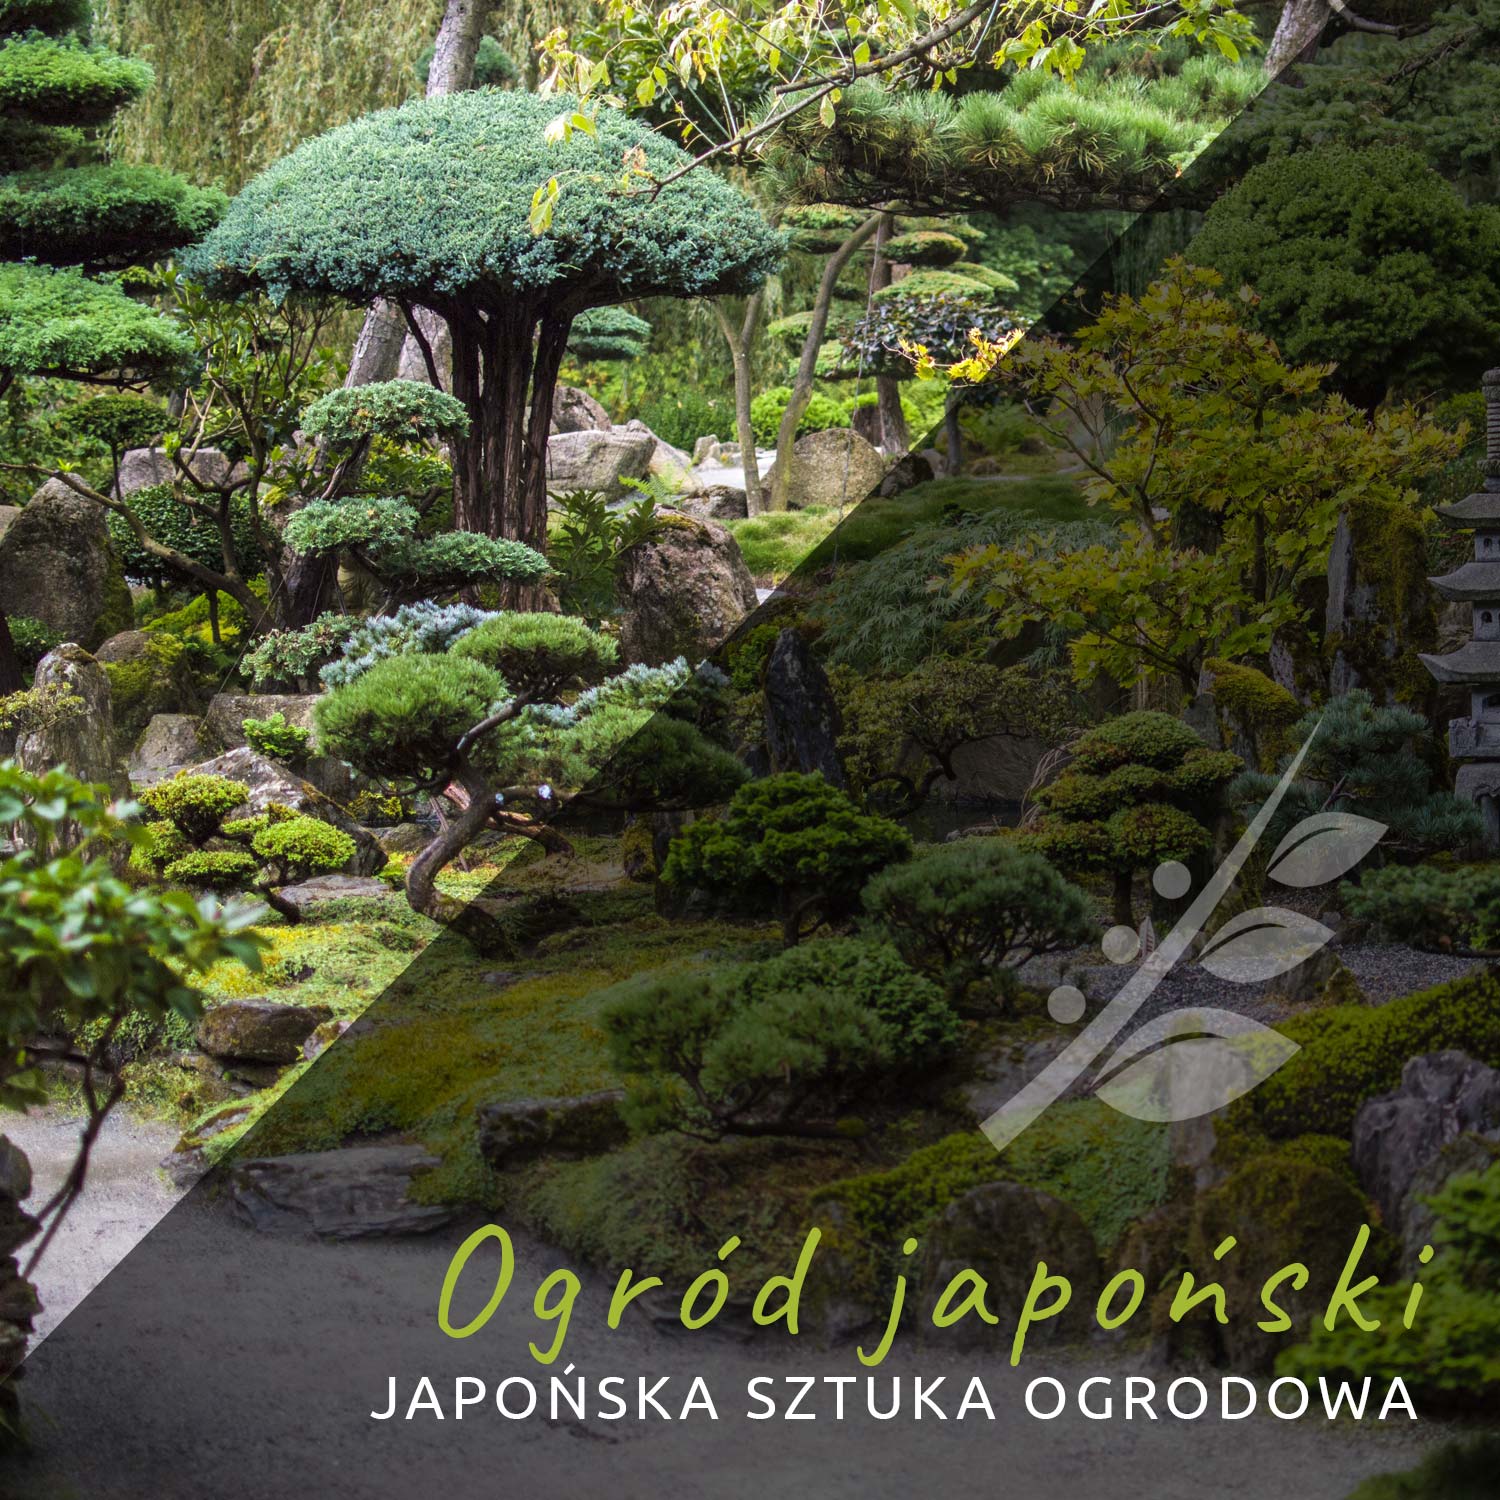 Ogród japoński. Japońska sztuka ogrodowa.